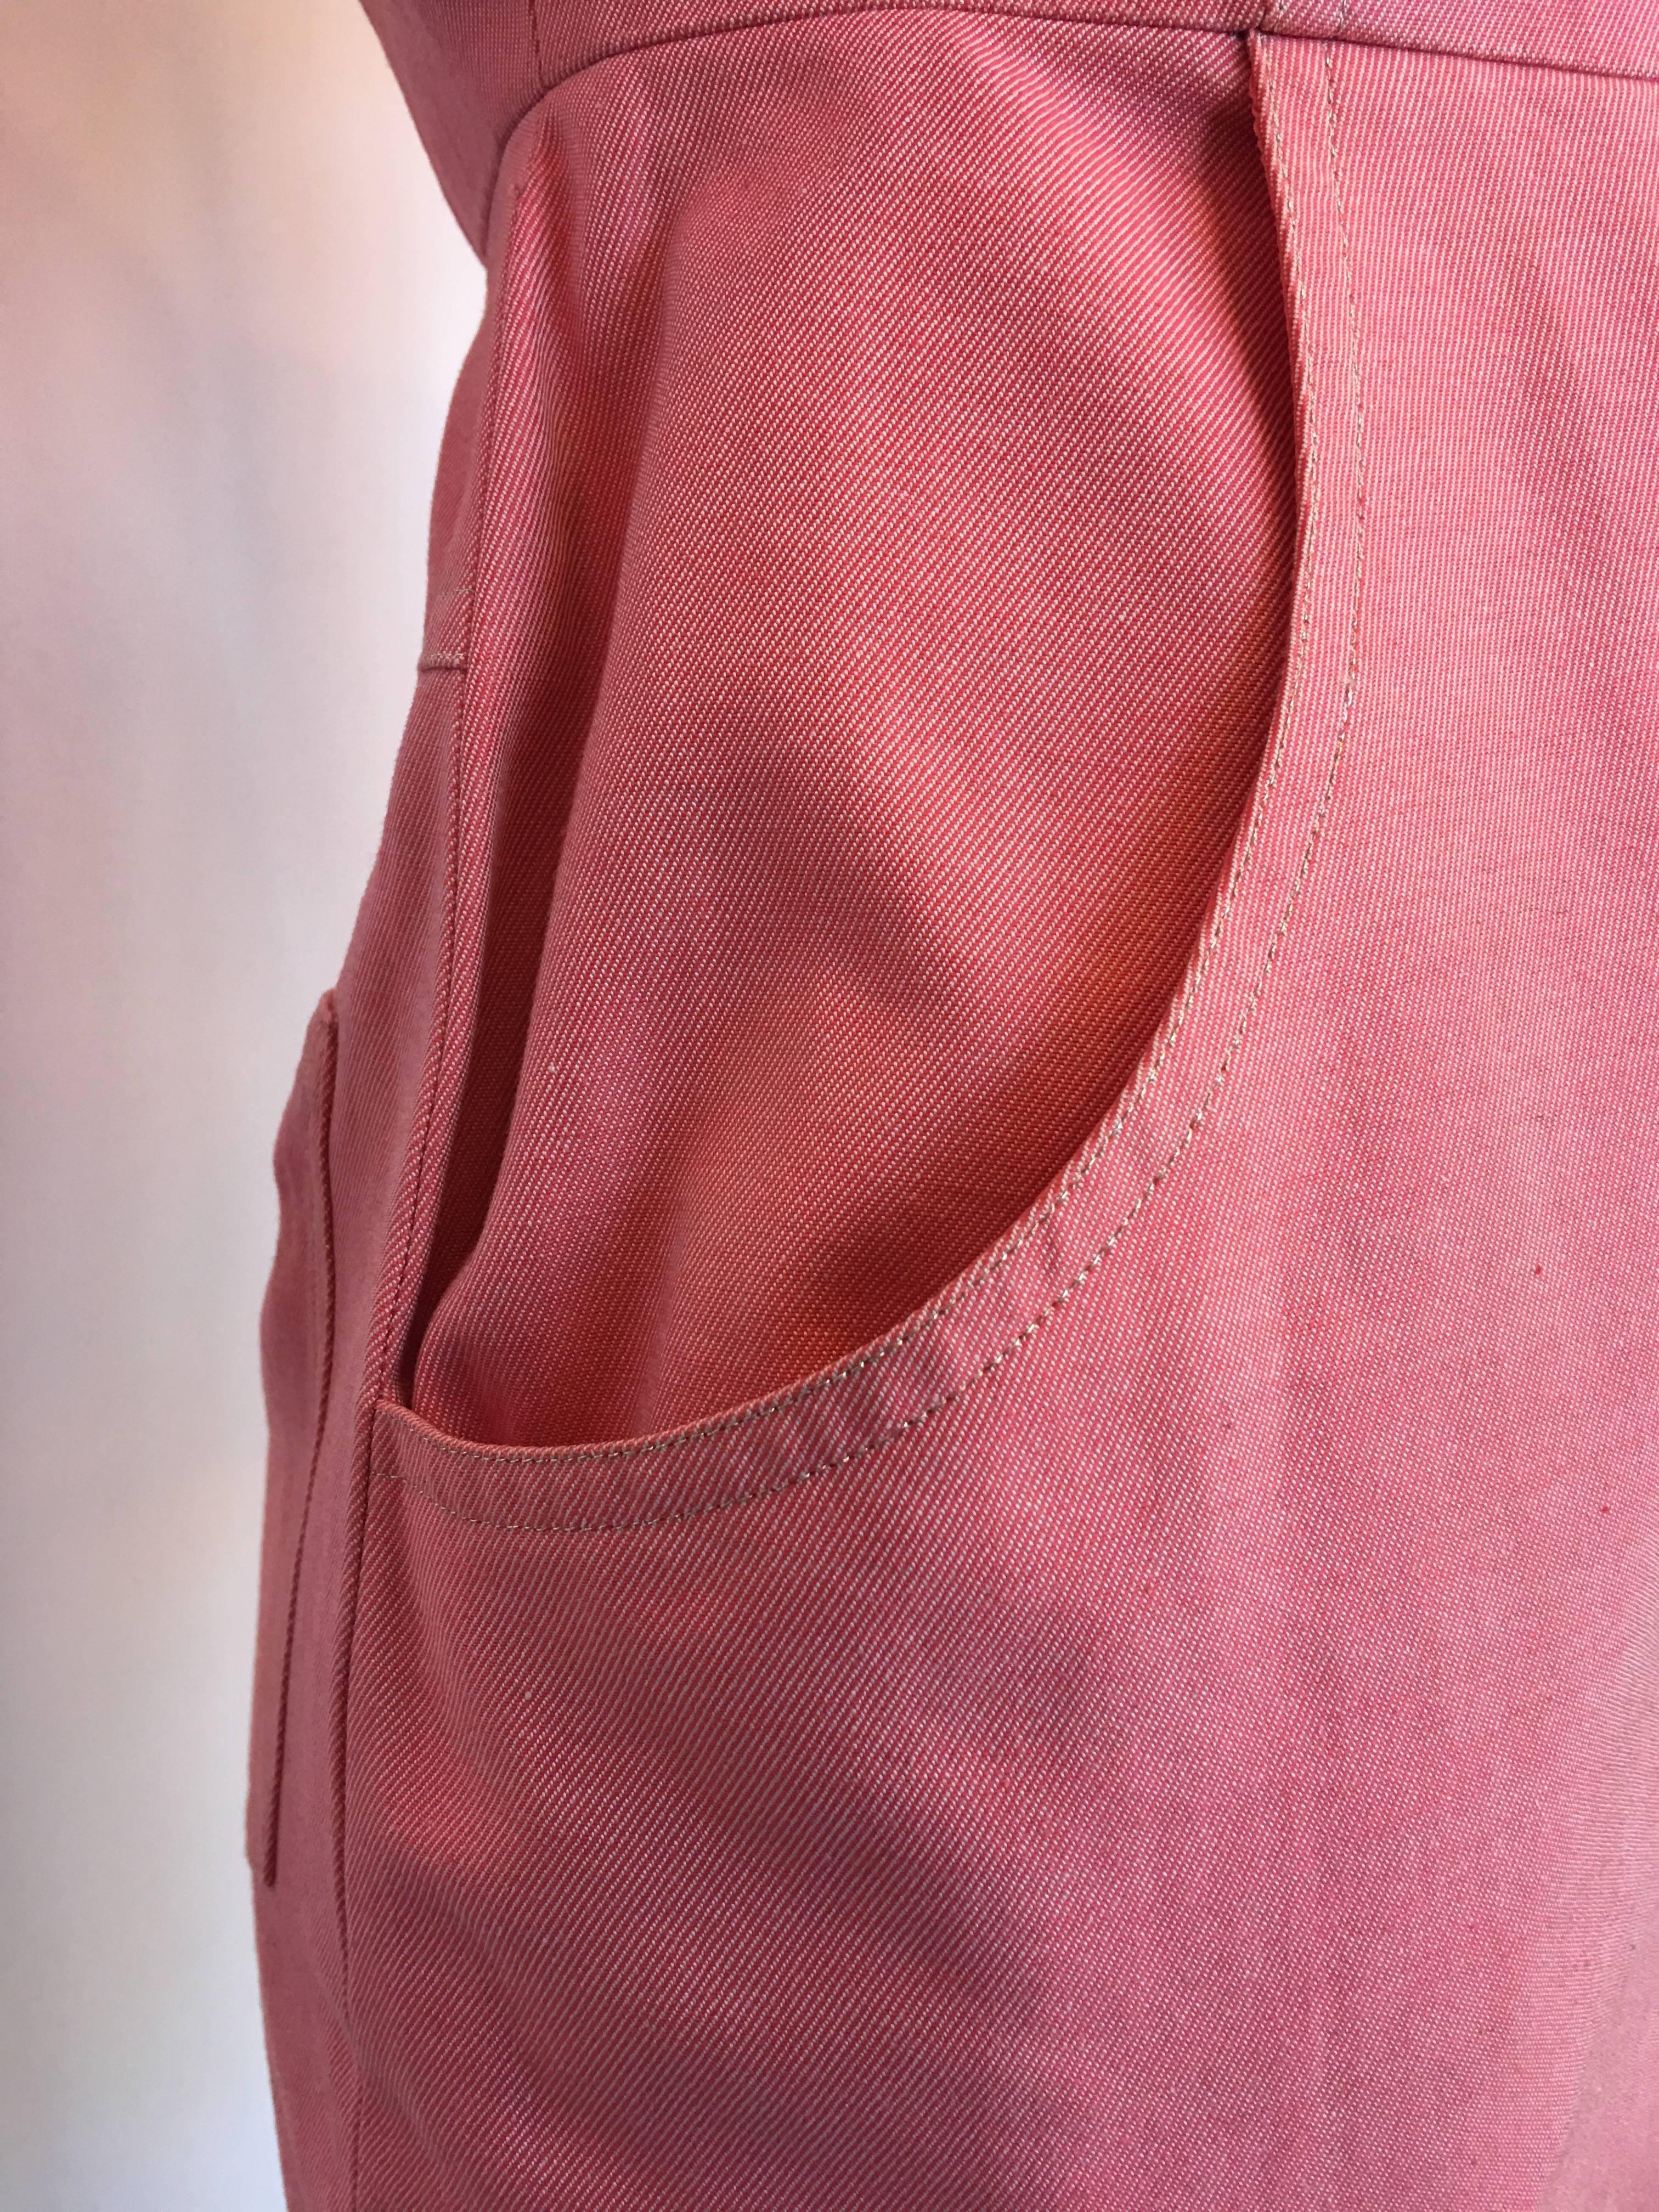 Women's or Men's Bill Blass Salmon Pink Button Up Uniform Suit Dress, 1990s  For Sale